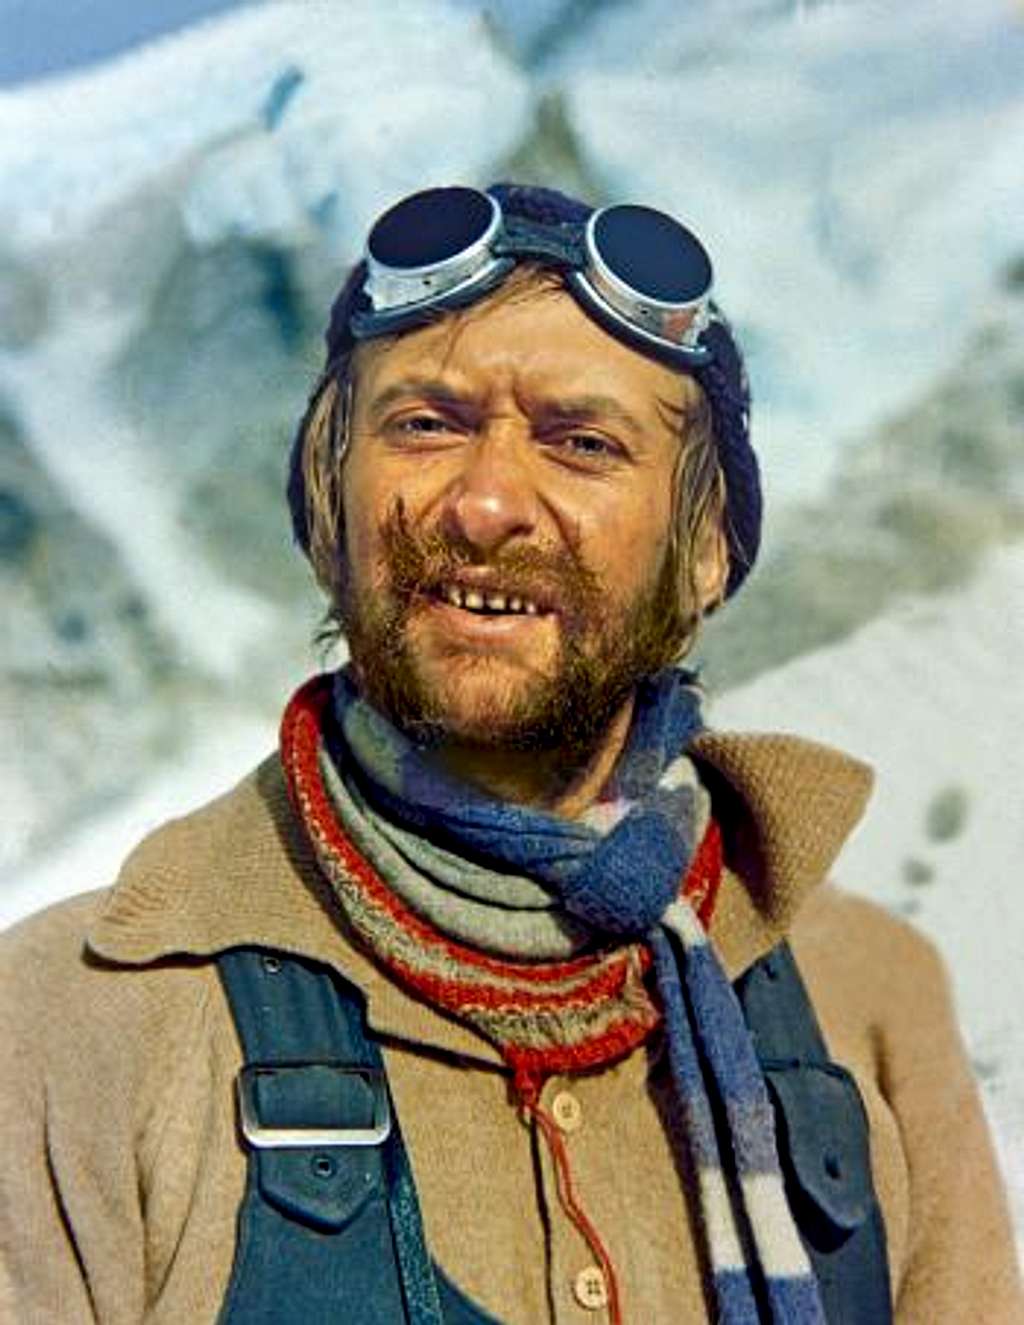 Mount Everest first winter ascent - Krzysztof Wielicki